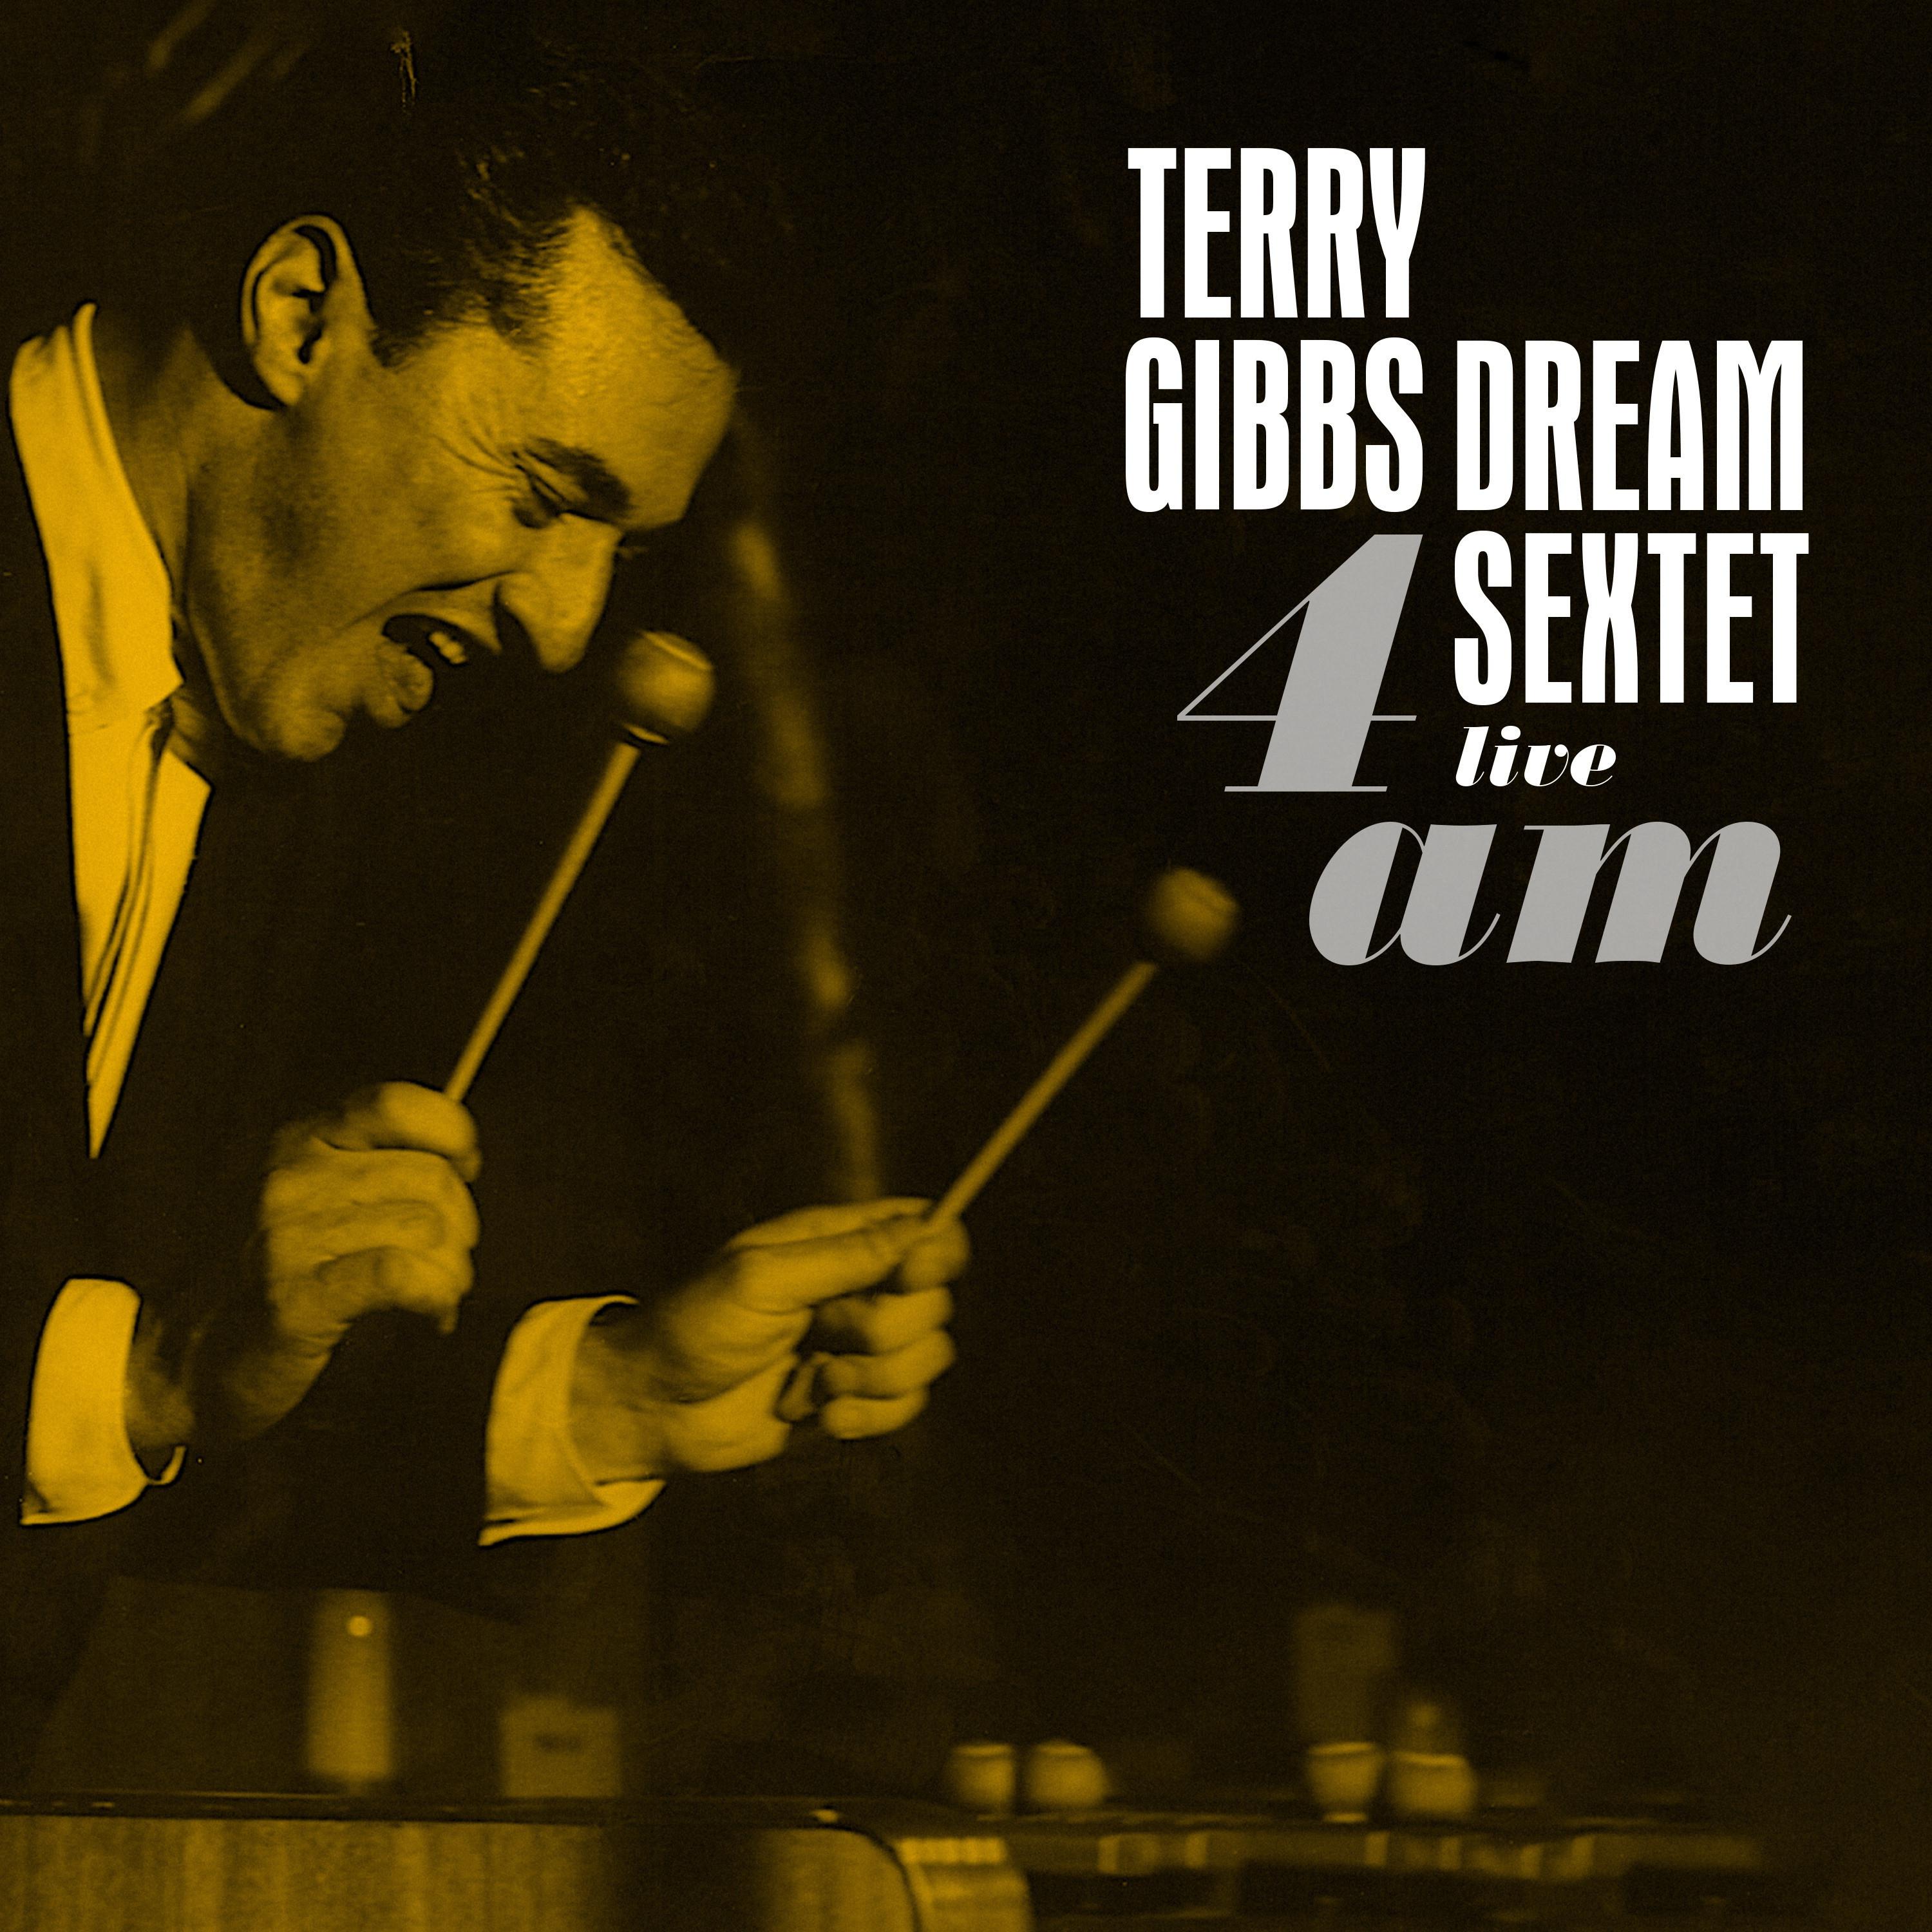 Terry Gibbs - Those Eyes (Live)